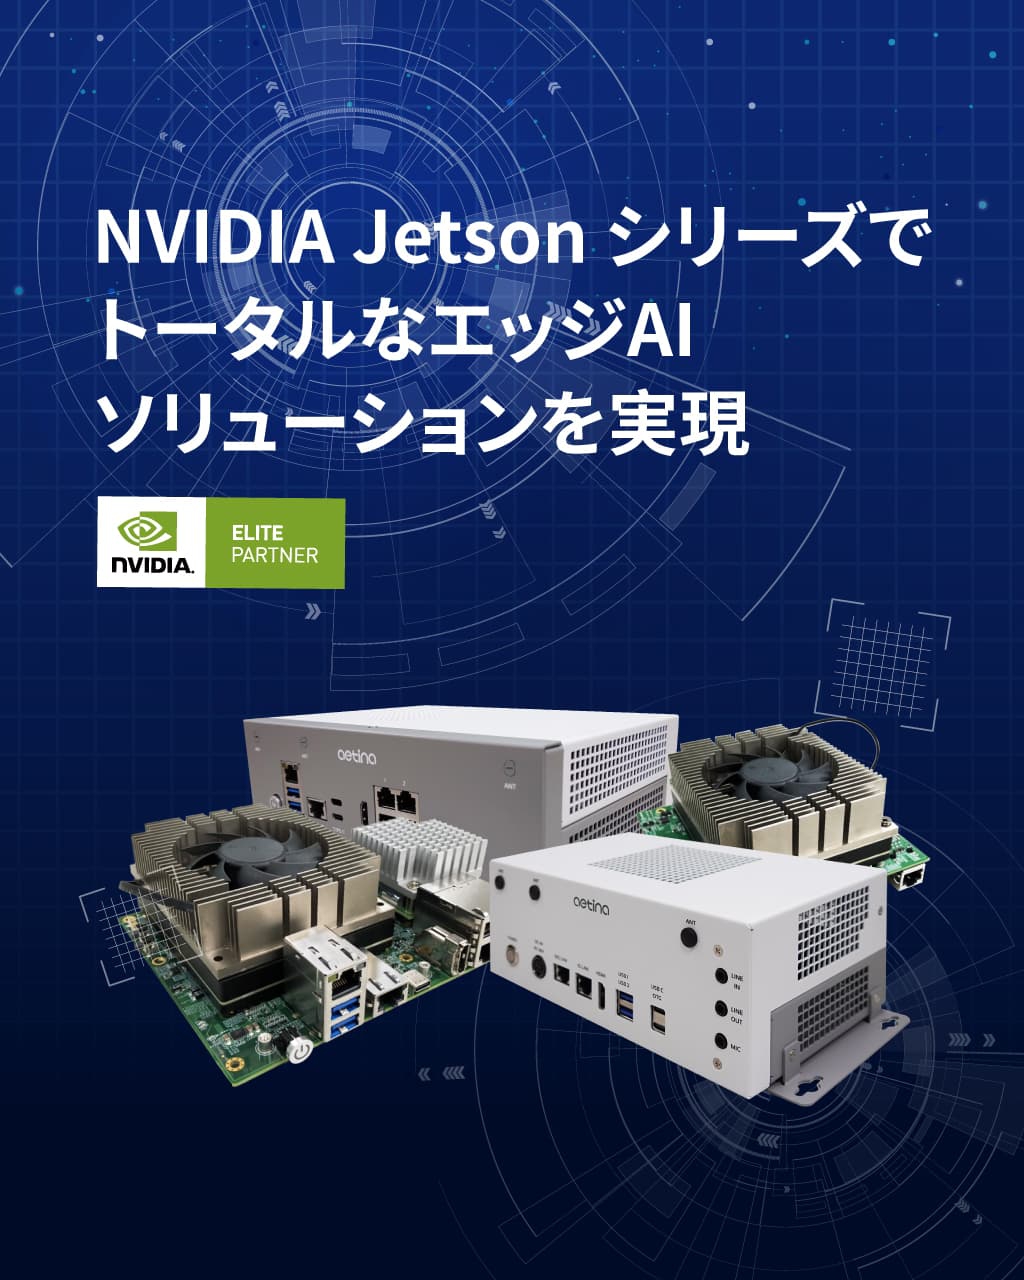 NVIDIA Jetson シリーズでトータルなエッジAIソリューションを実現